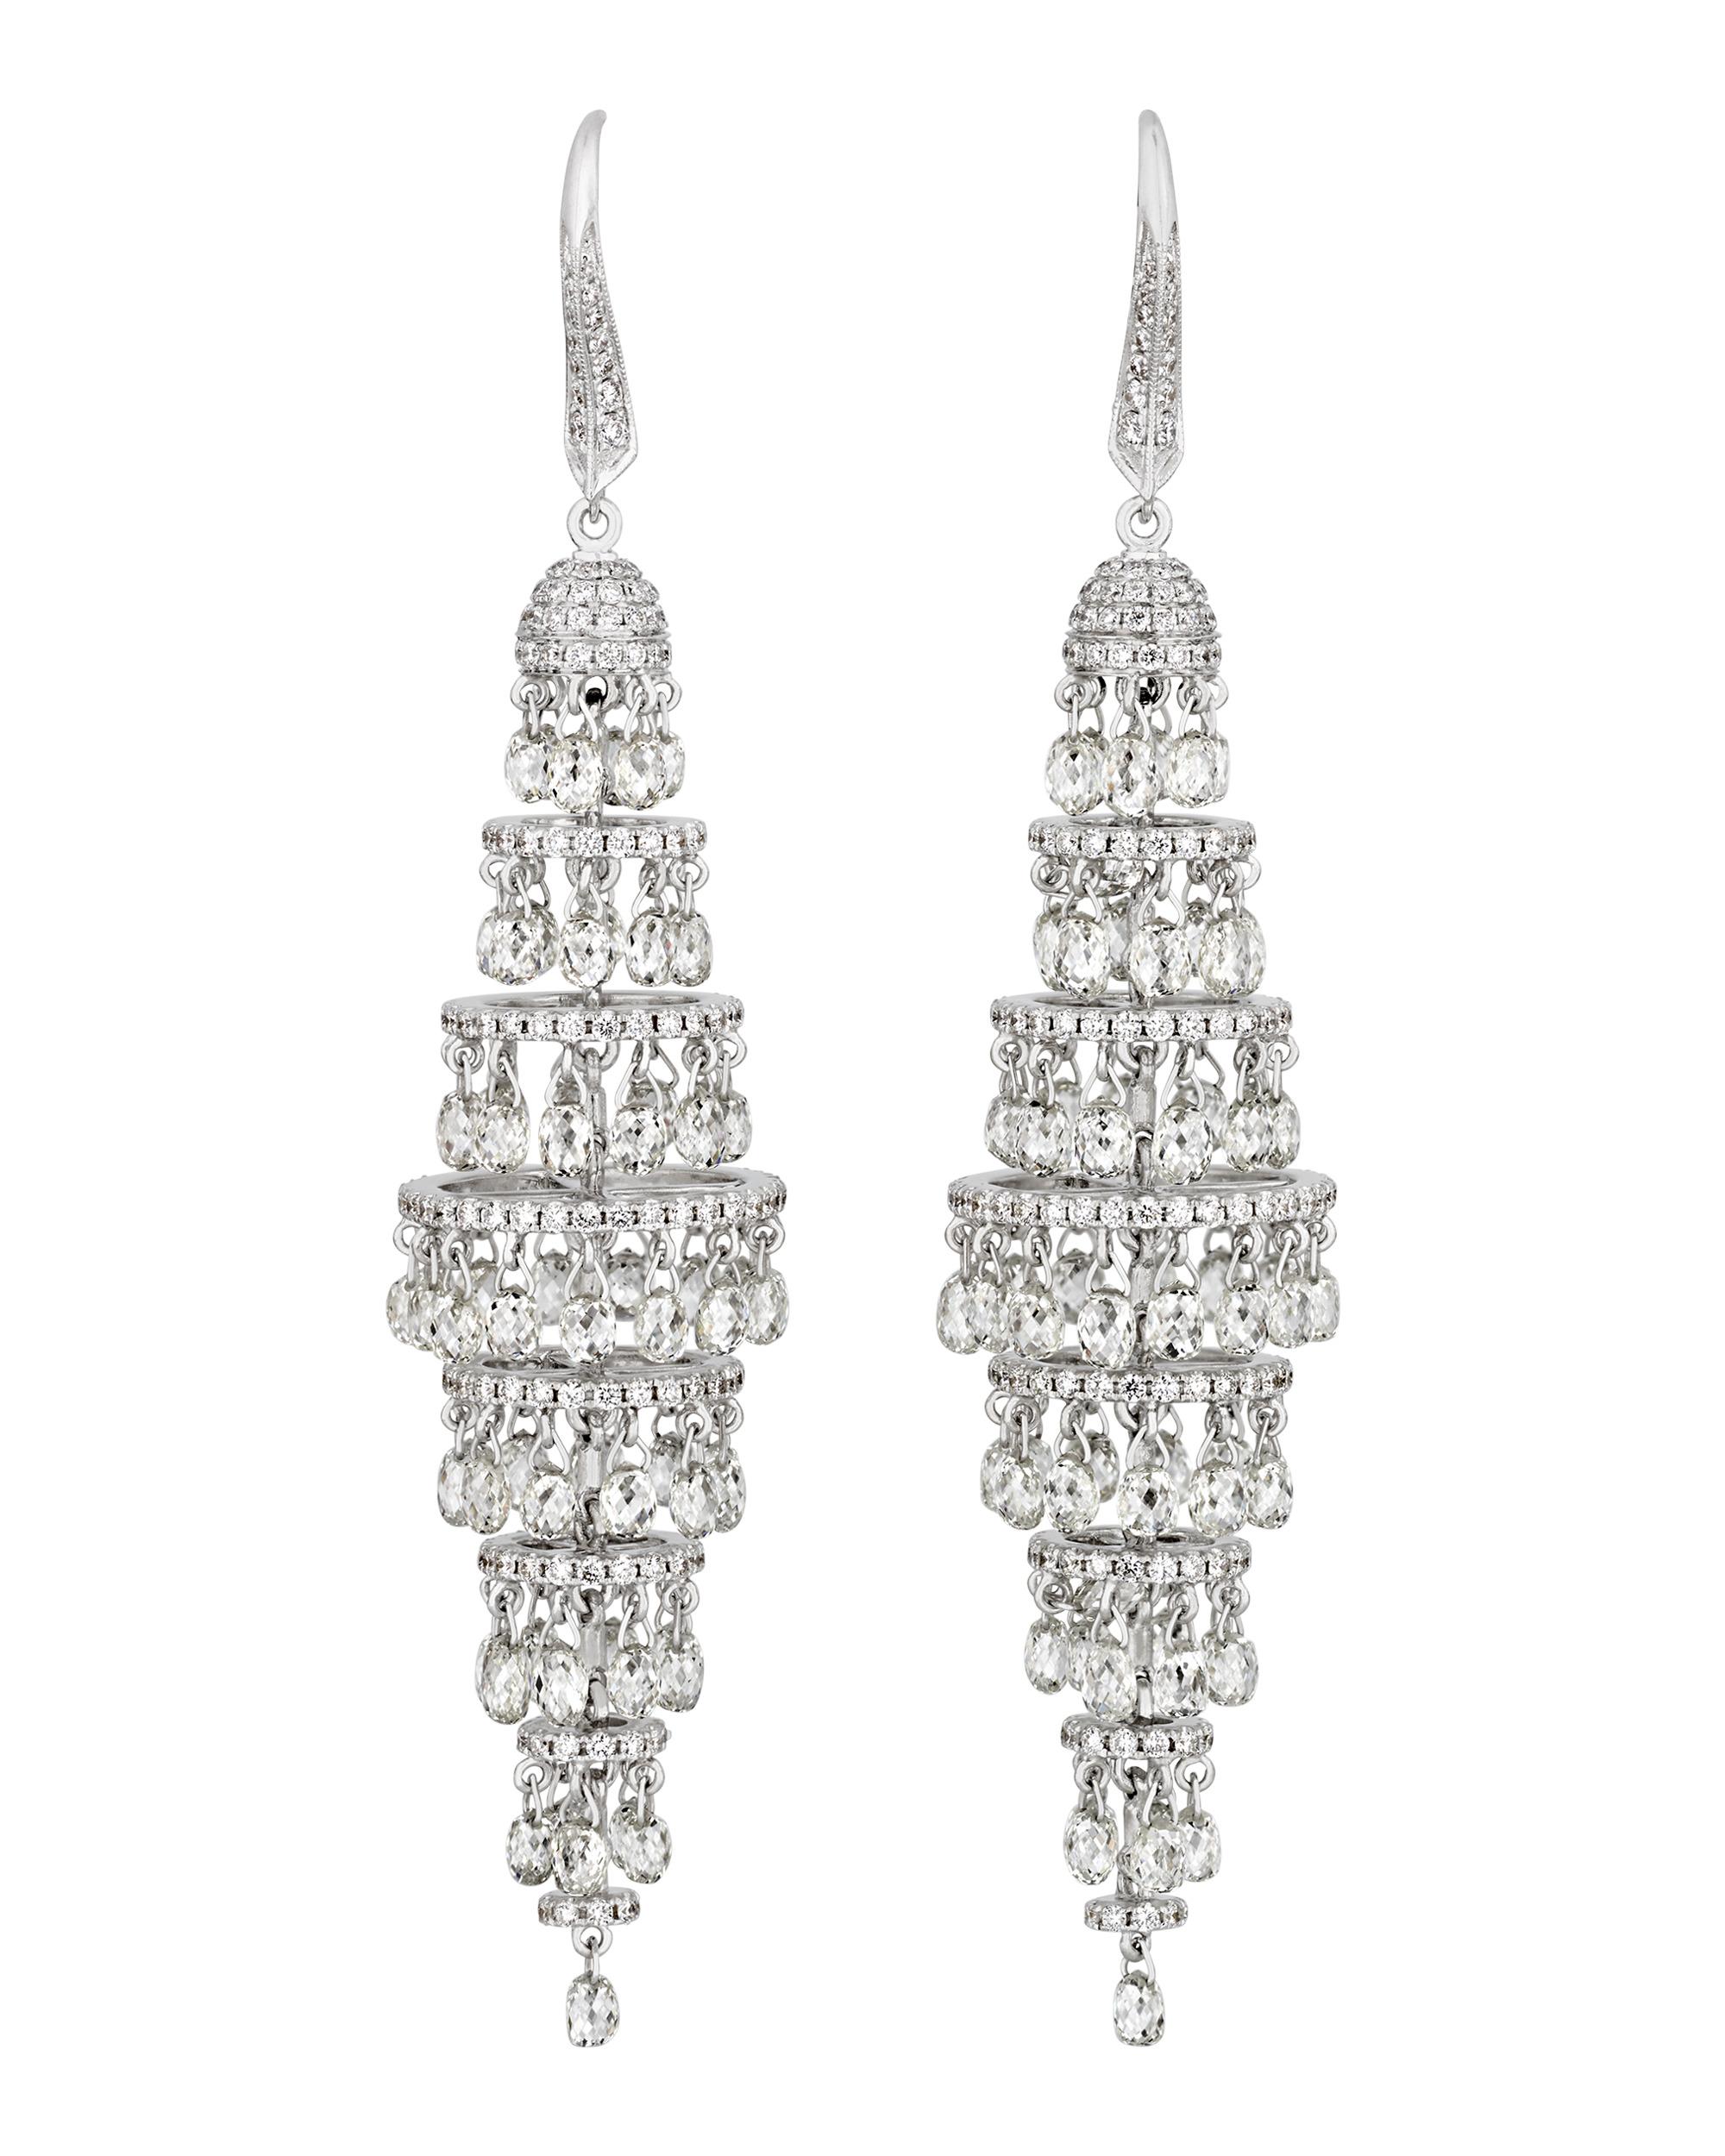 Modern Briolette Diamond Chandelier Earrings, 19.07 Carats